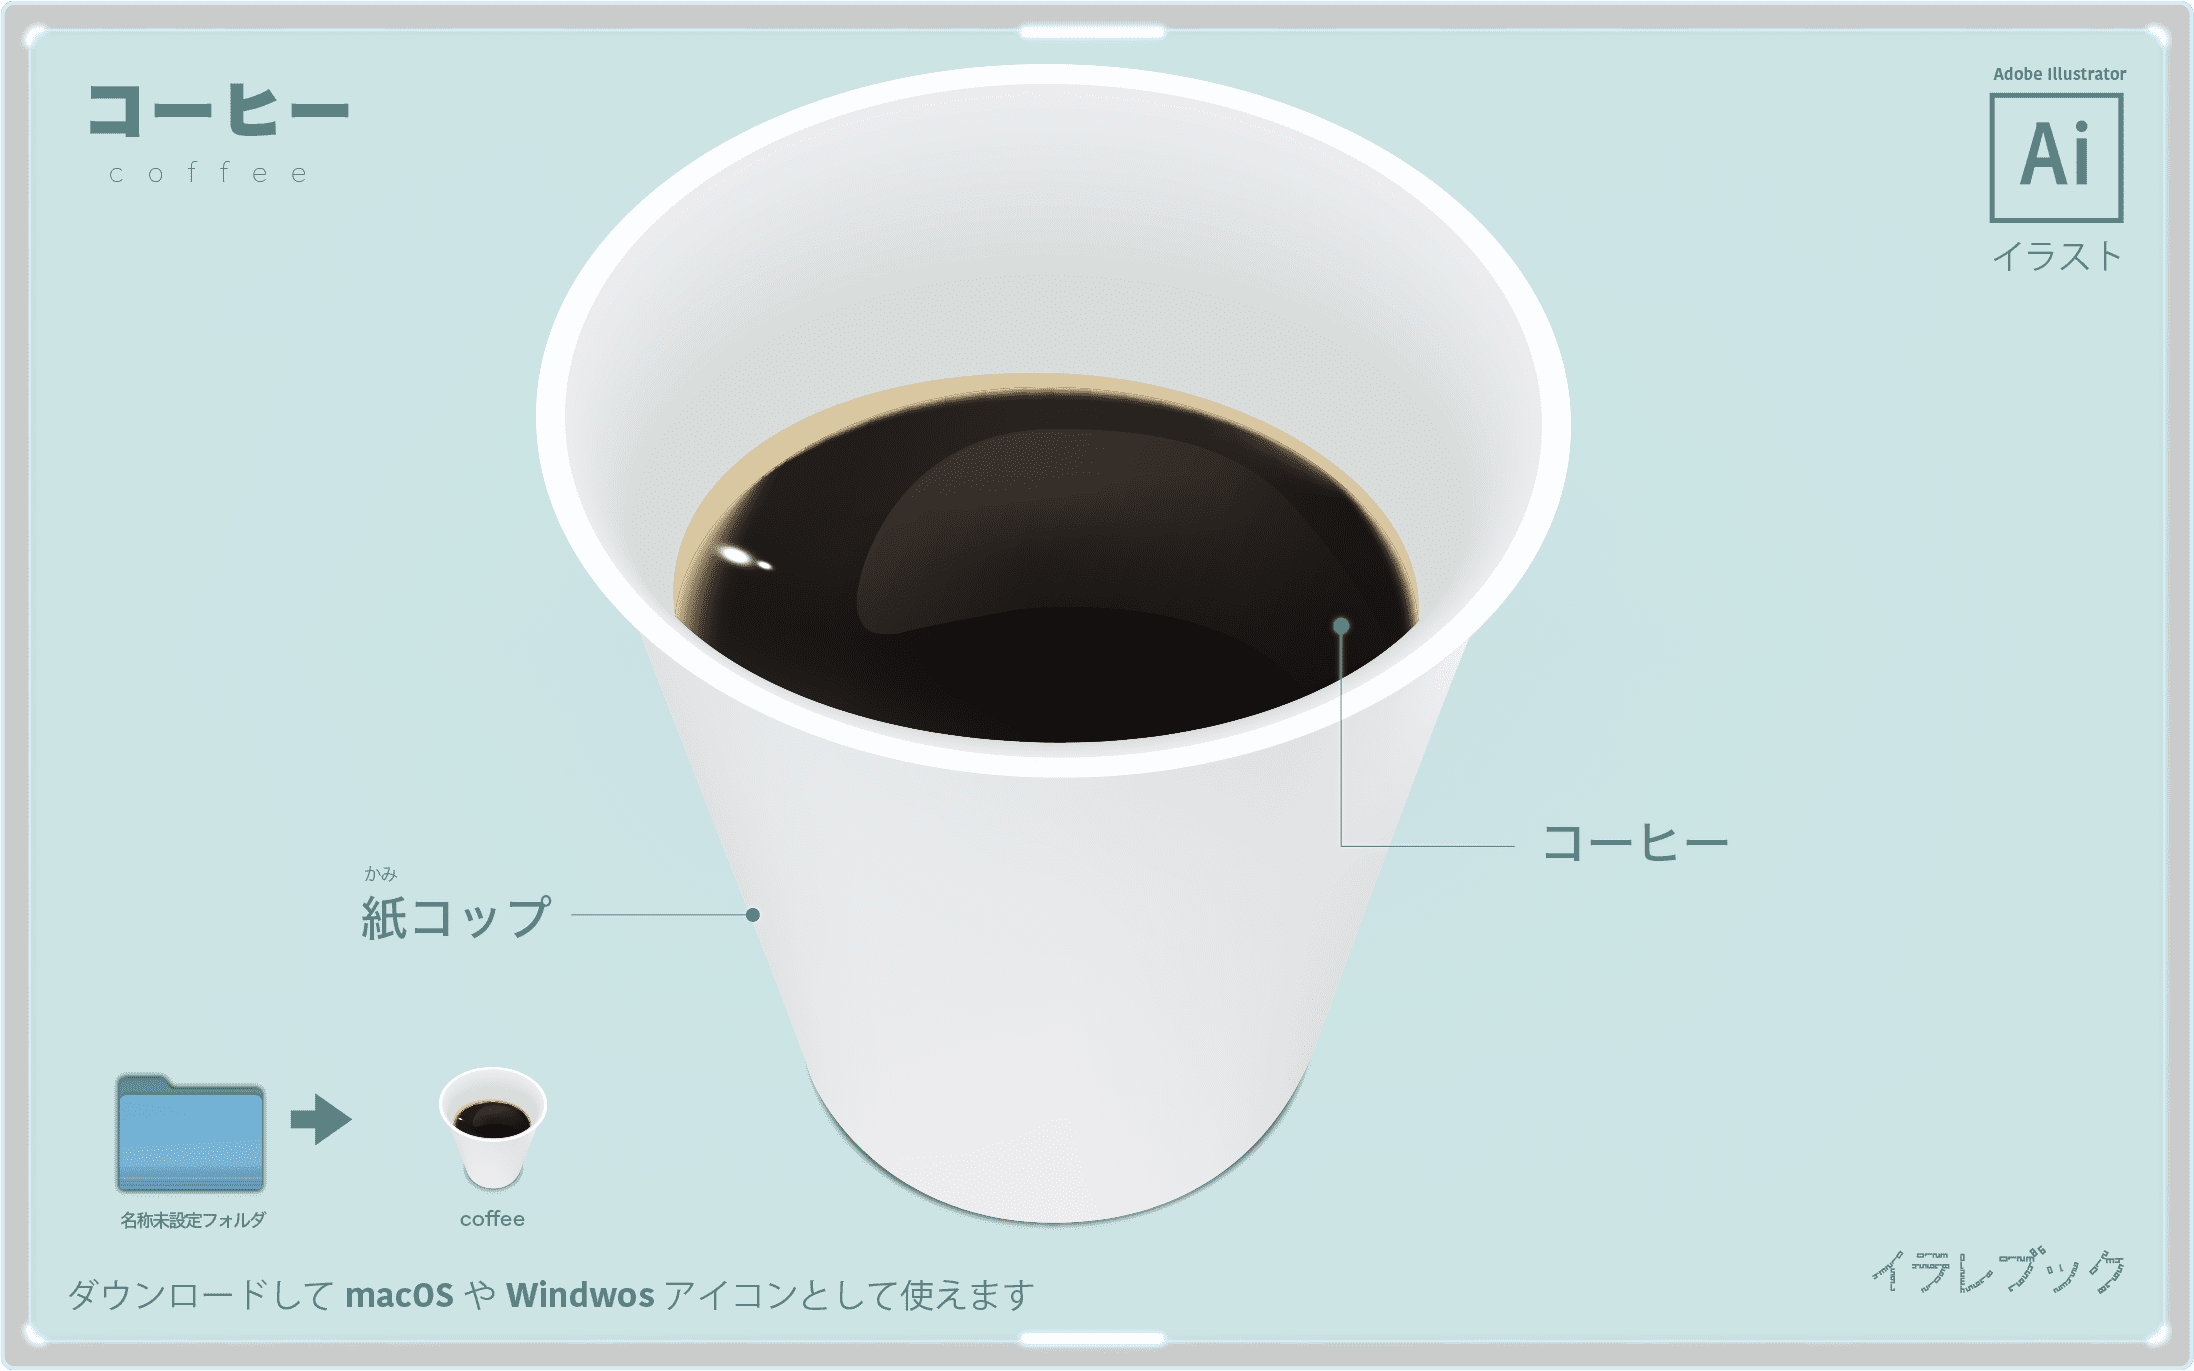 コーヒー 起源とカフェイン 栄養 焙煎 スティックコーヒー ブランド 画像でみる